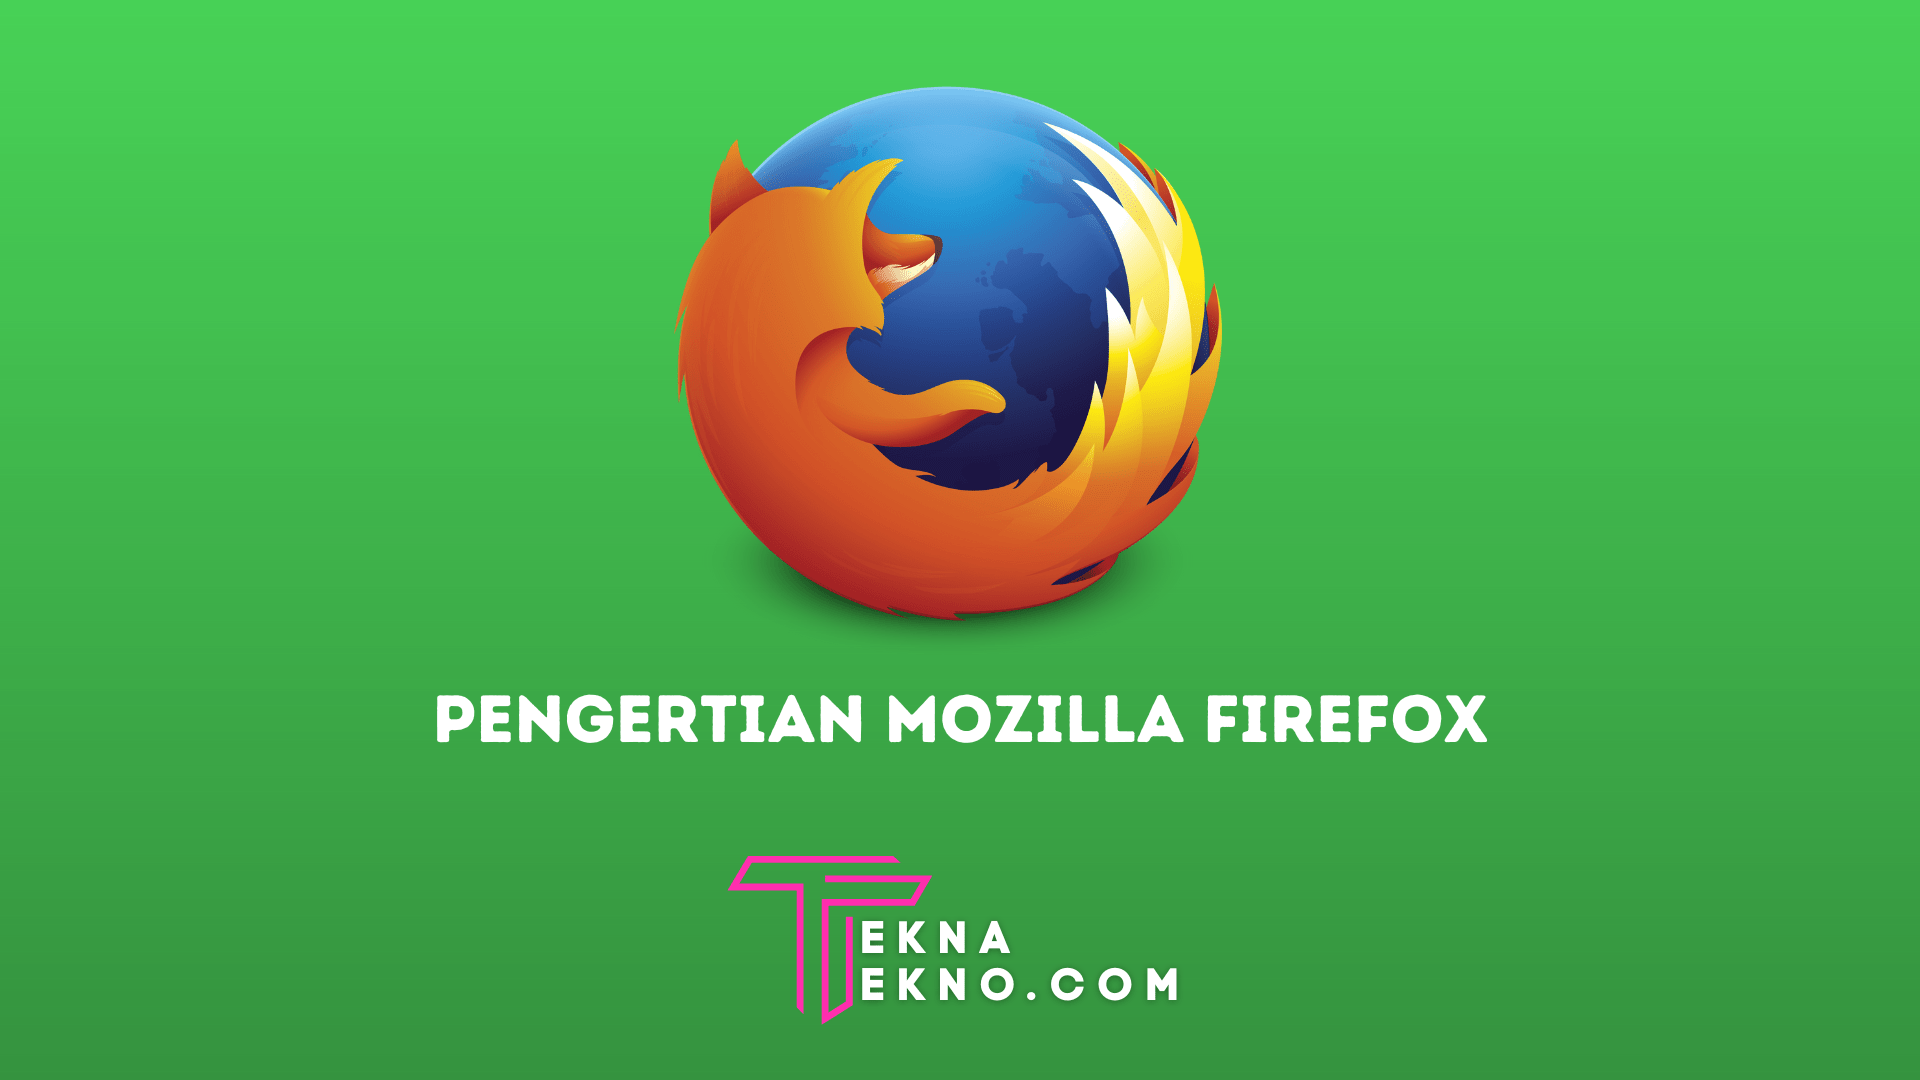 Pengertian Mozilla Firefox, Sejarah, Fitur, Kelebihan dan Kekurangannya